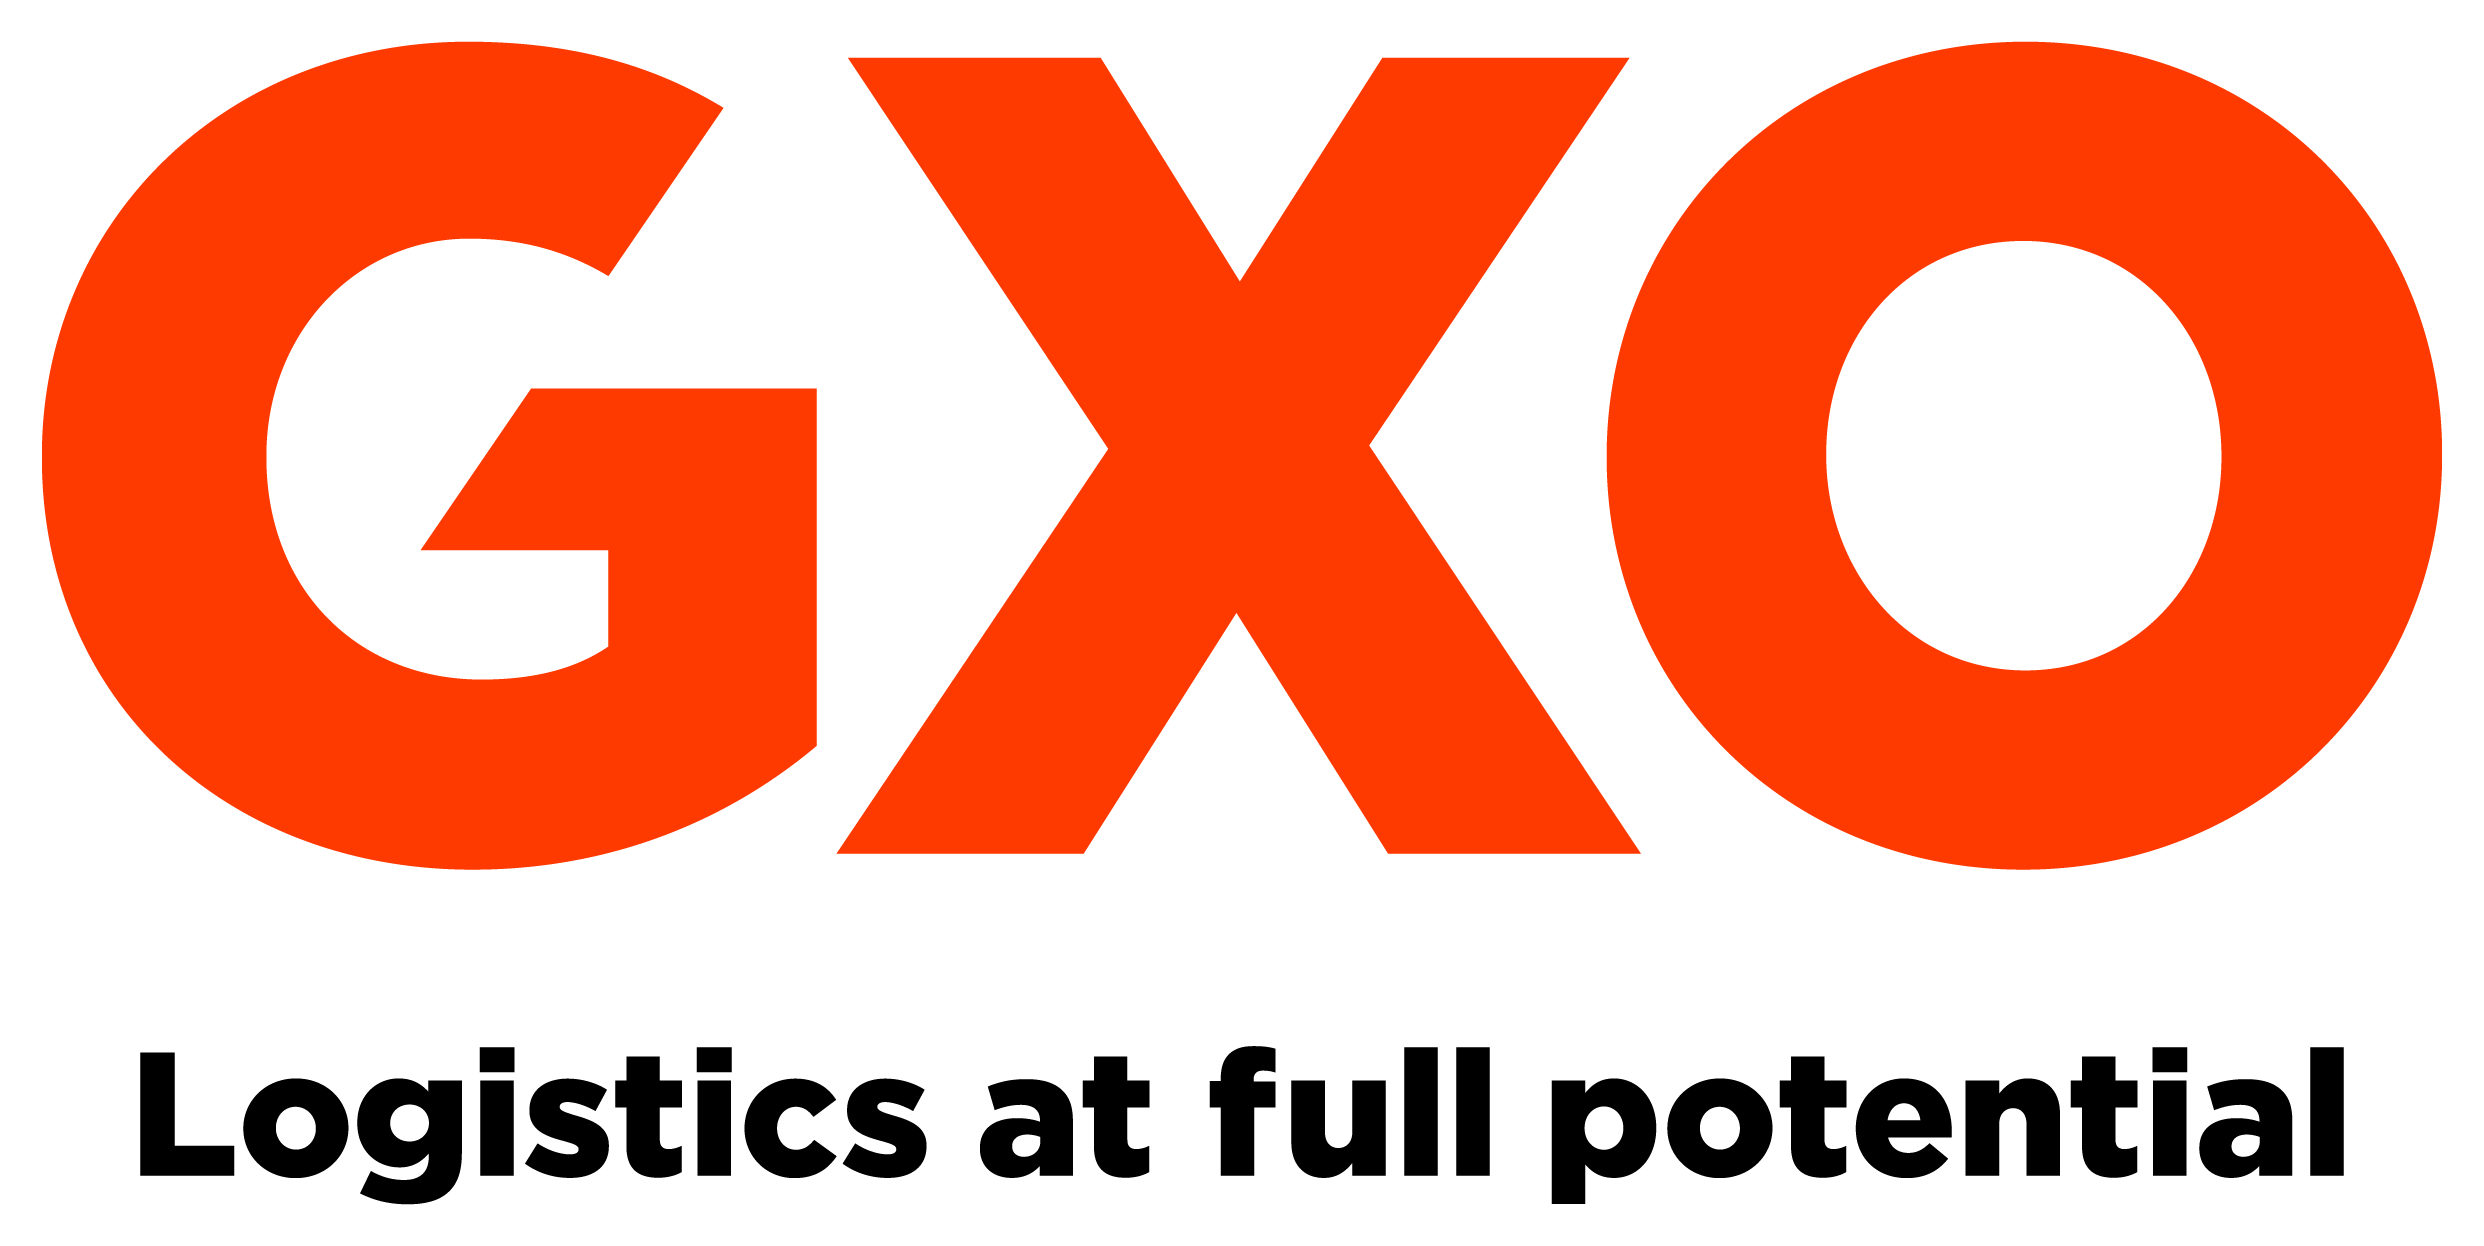 GXO logo with tagline